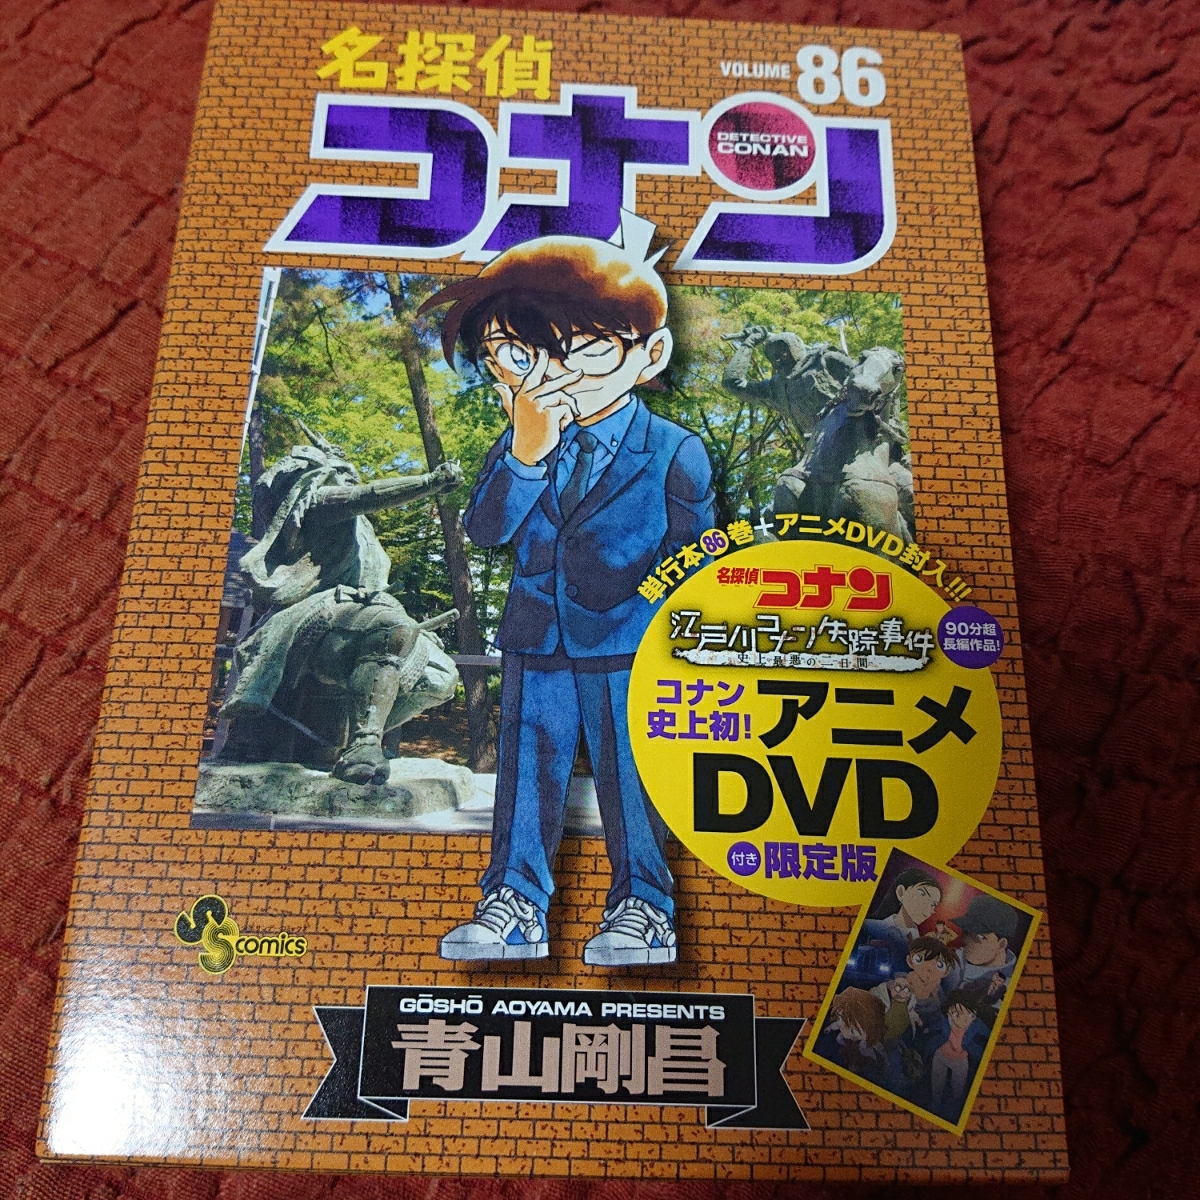 ヤフオク 名探偵コナン 86巻 Dvd付き限定版